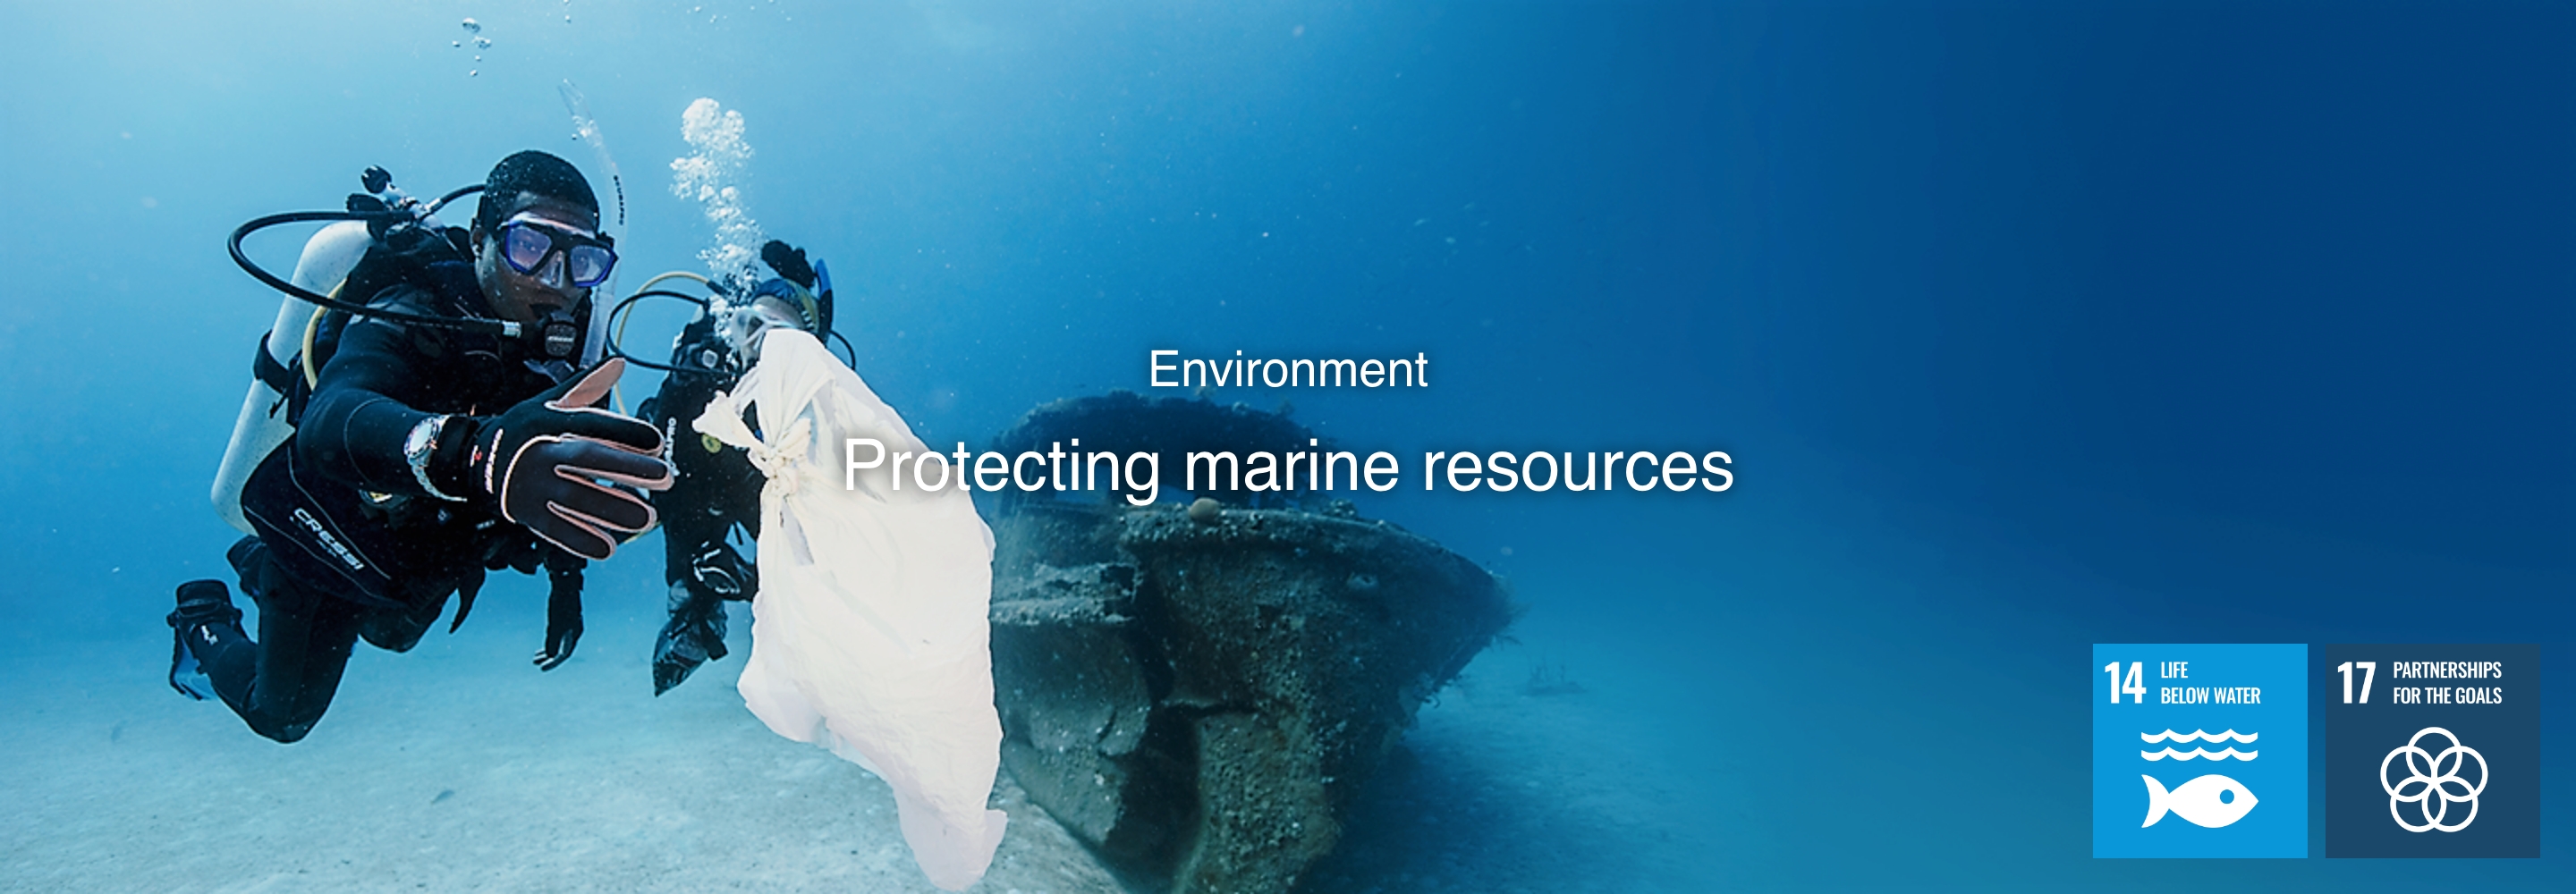 L'ambiente Protezione delle risorse marine